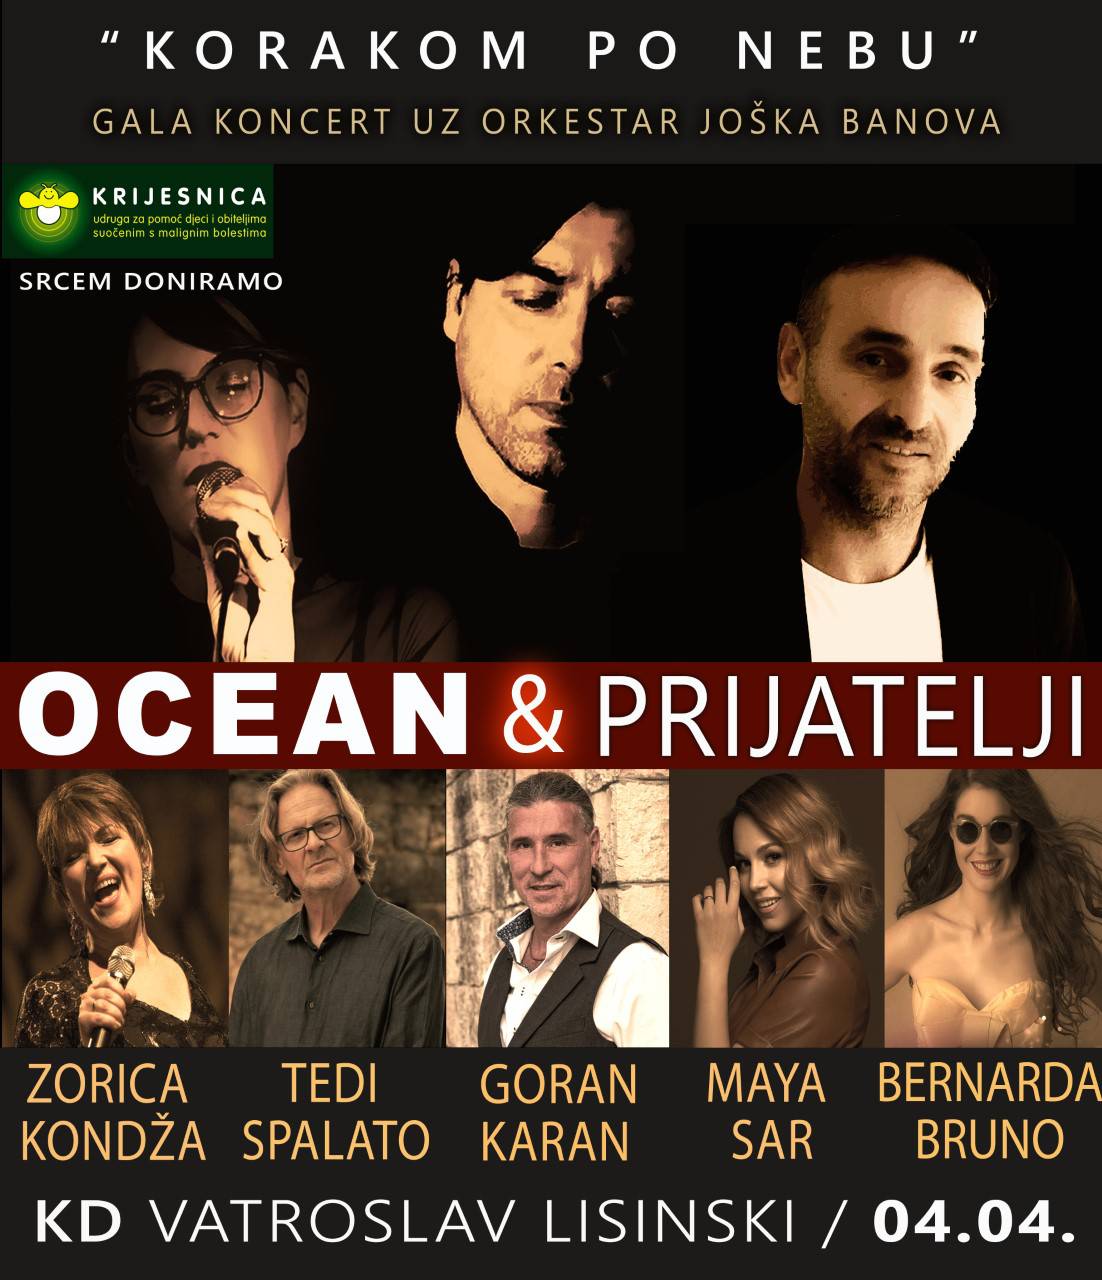 Veliki humanitarni koncert u Lisinskom okupit će brojna poznata lica s hrvatske estrade